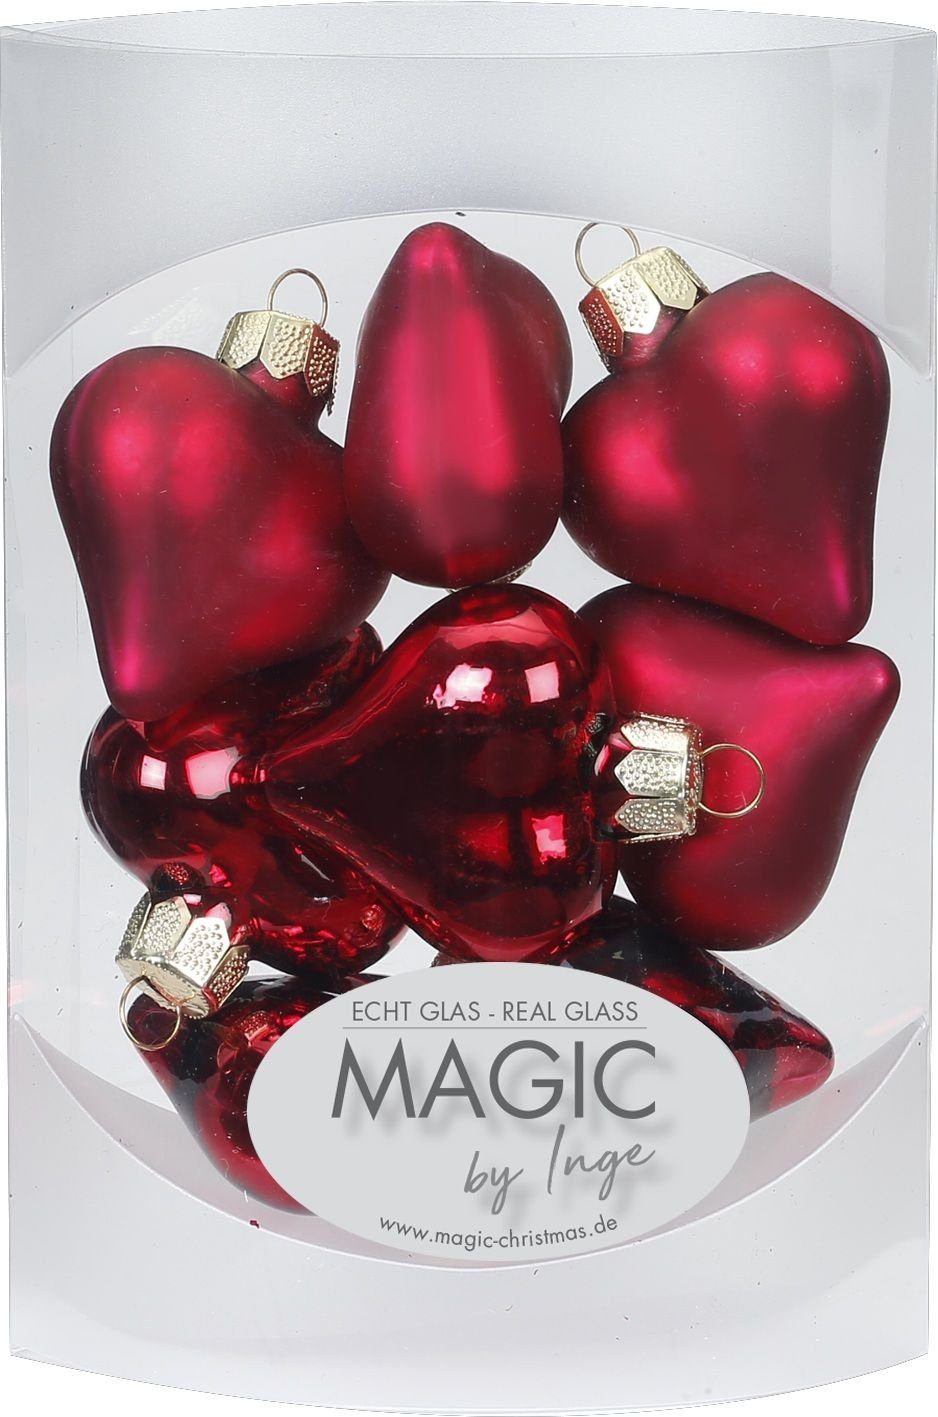 MAGIC by Inge Christbaumschmuck, Christbaumschmuck Herzen Glas 4cm Dark Red, 8 Stück